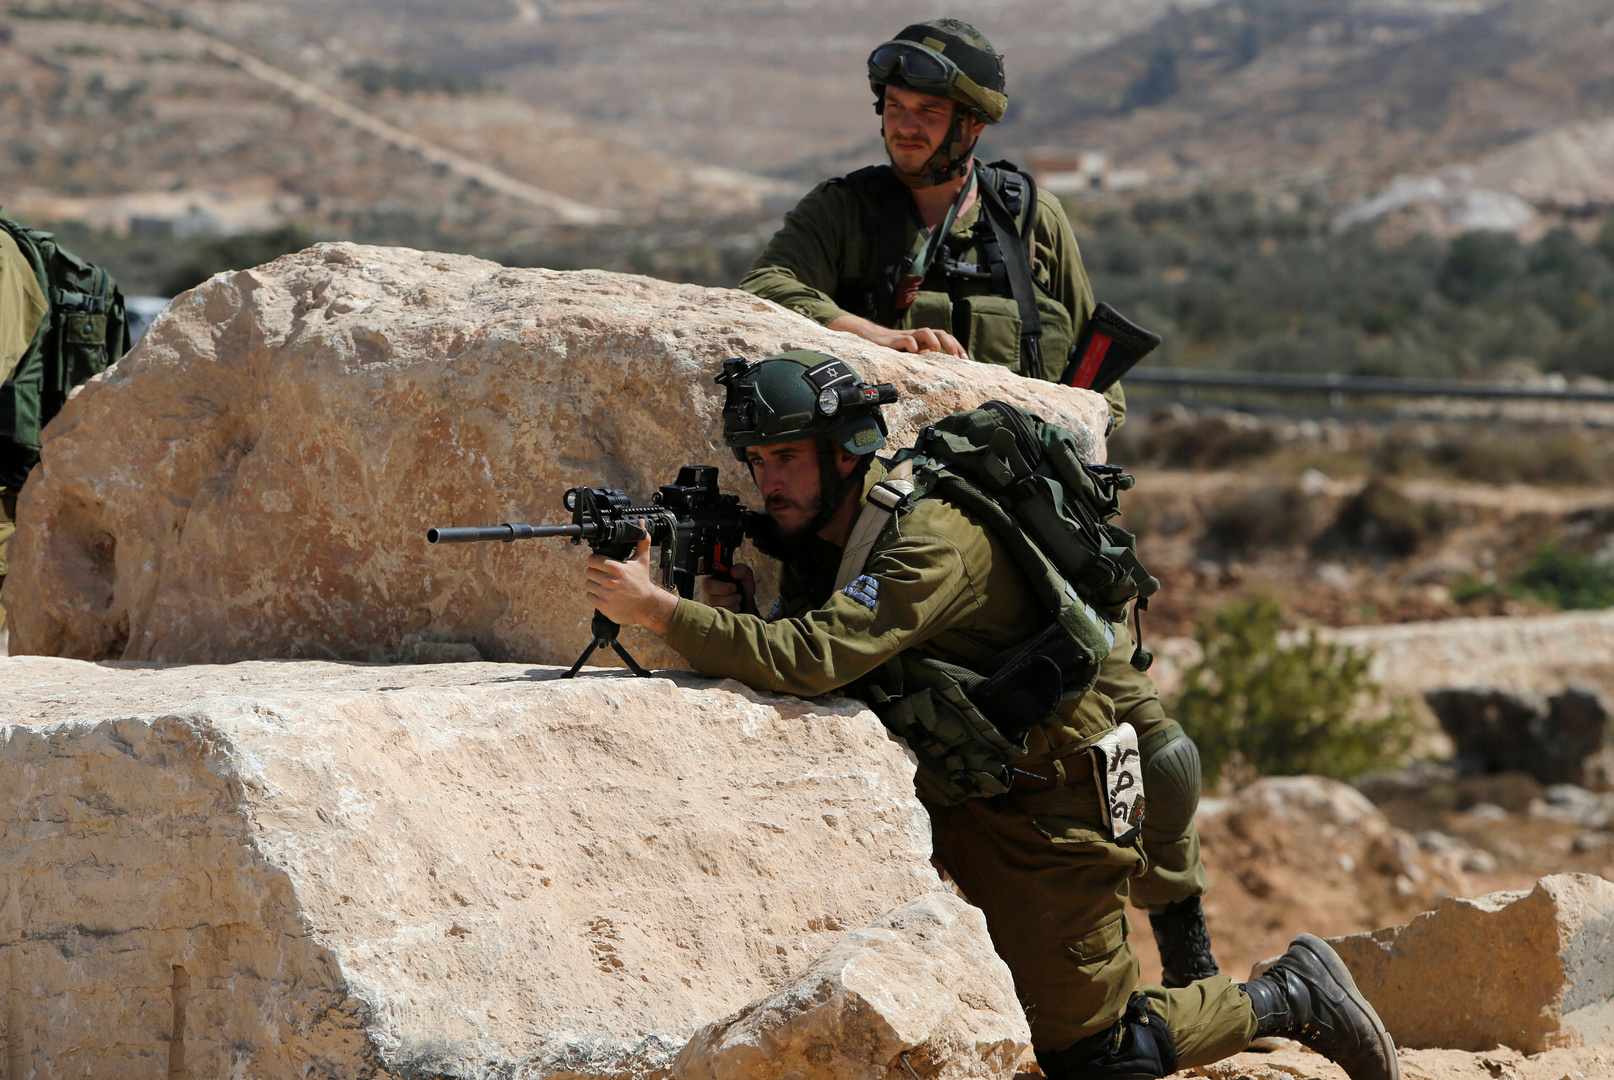 قرار "مفاجئ" من جيش الاحتلال يتعلق بدخول منازل الفلسطينيين في الضفة الغربية